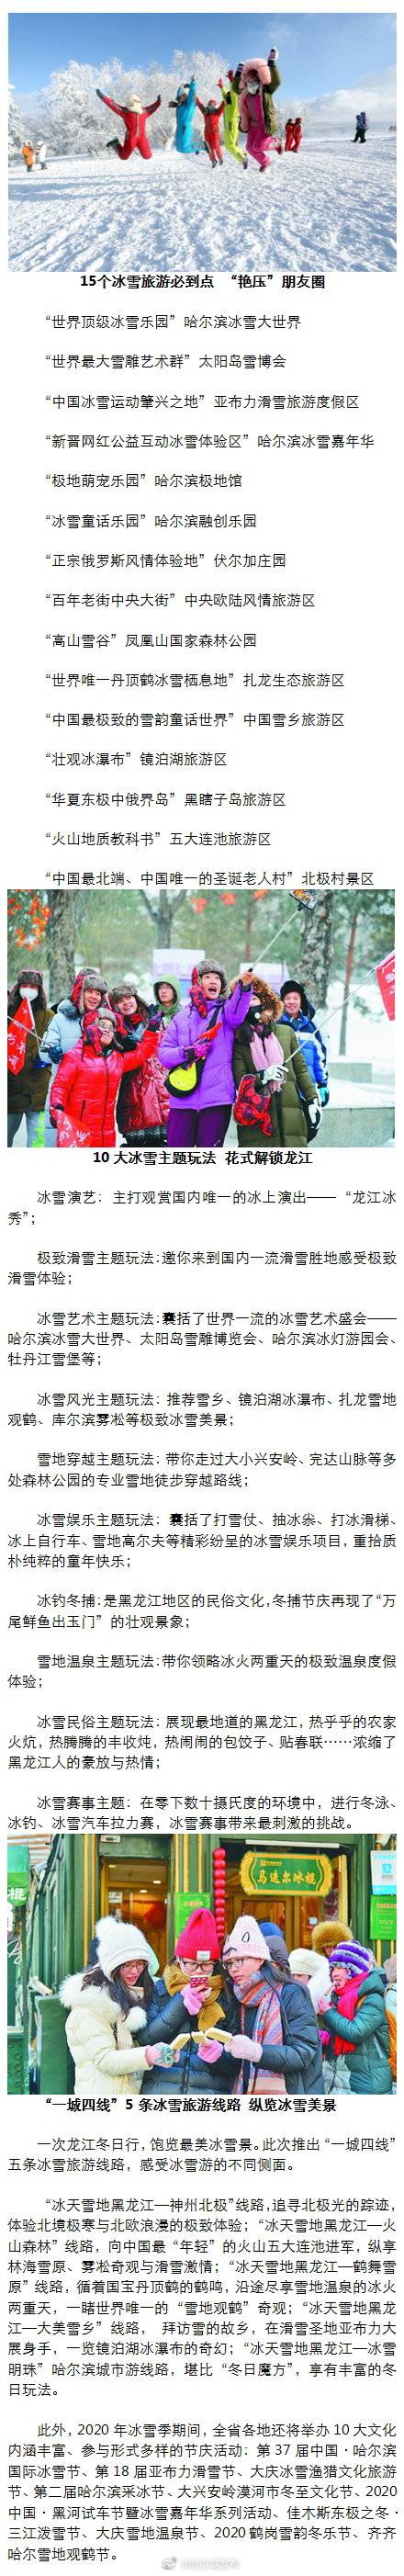 今冬来龙江15个“打卡地” 开启“冰雪奇缘”_旅游